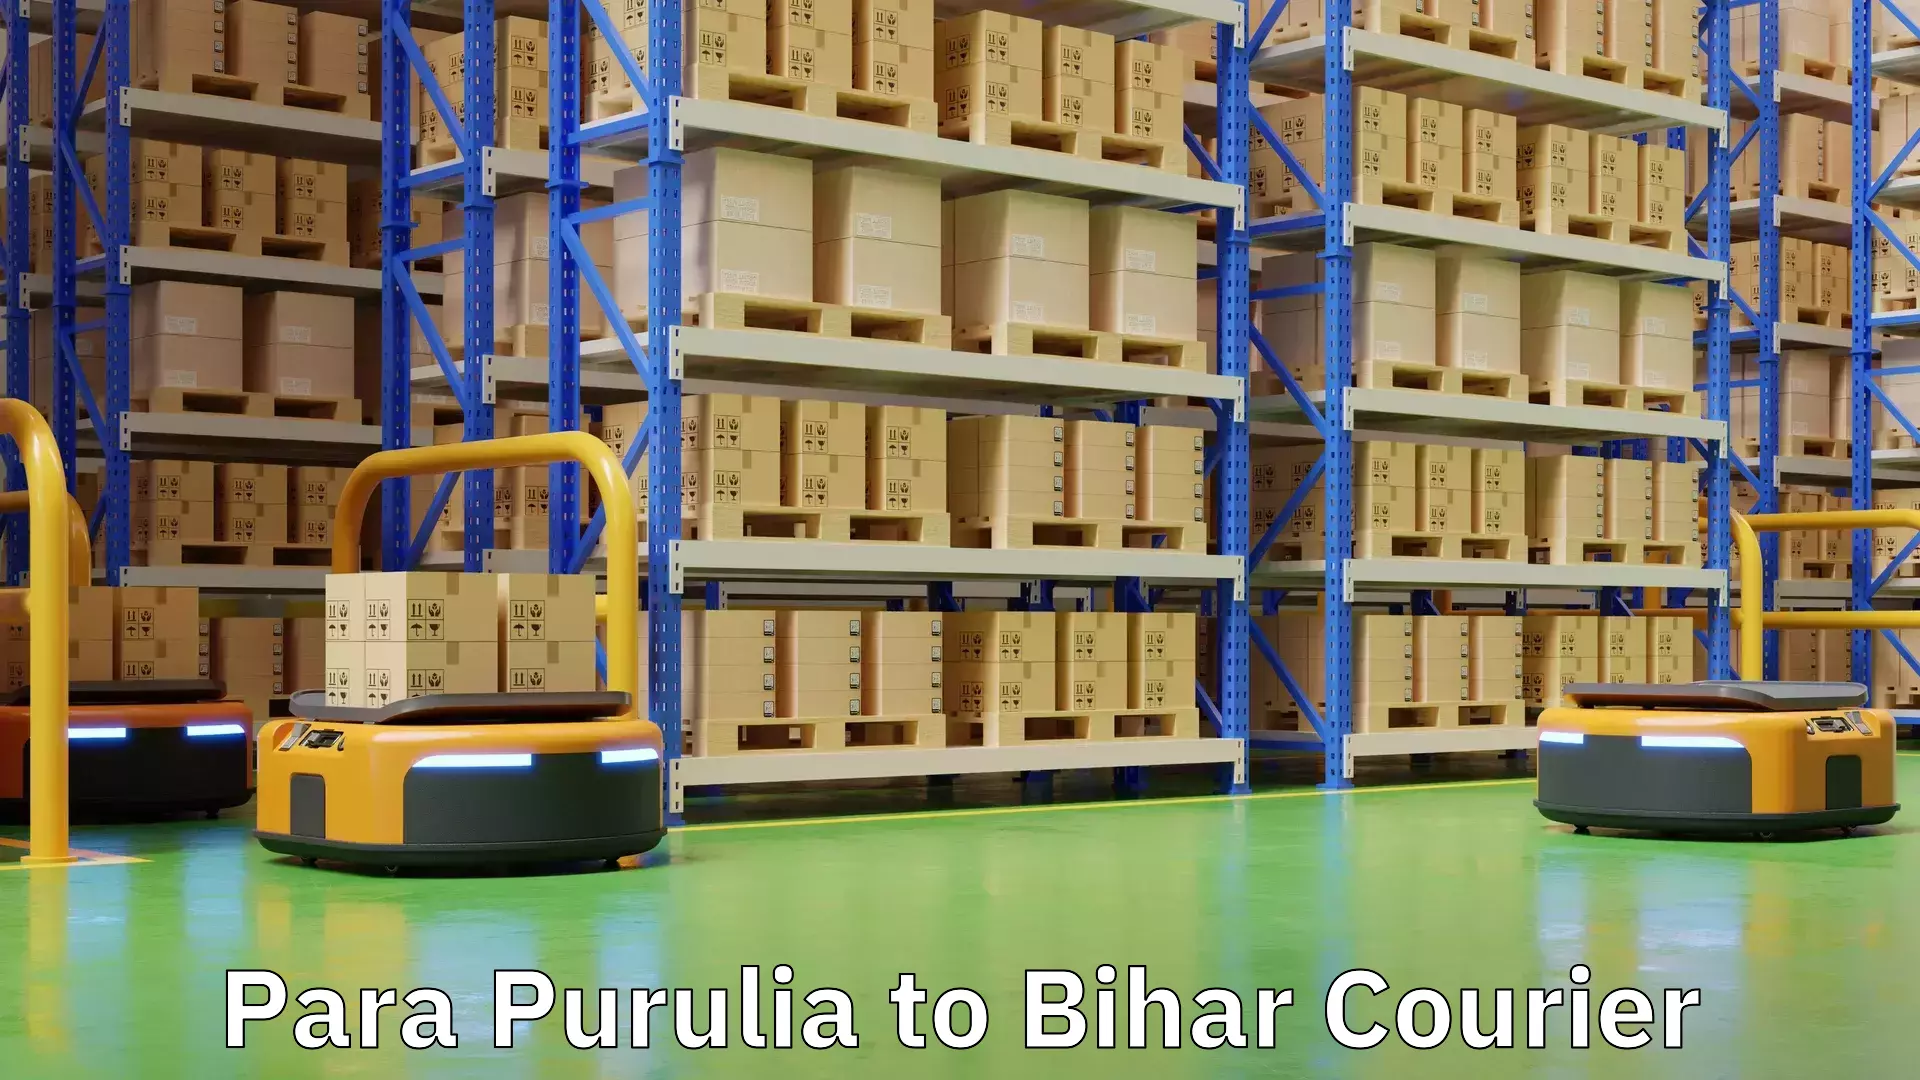 Doorstep delivery service Para Purulia to Bihar